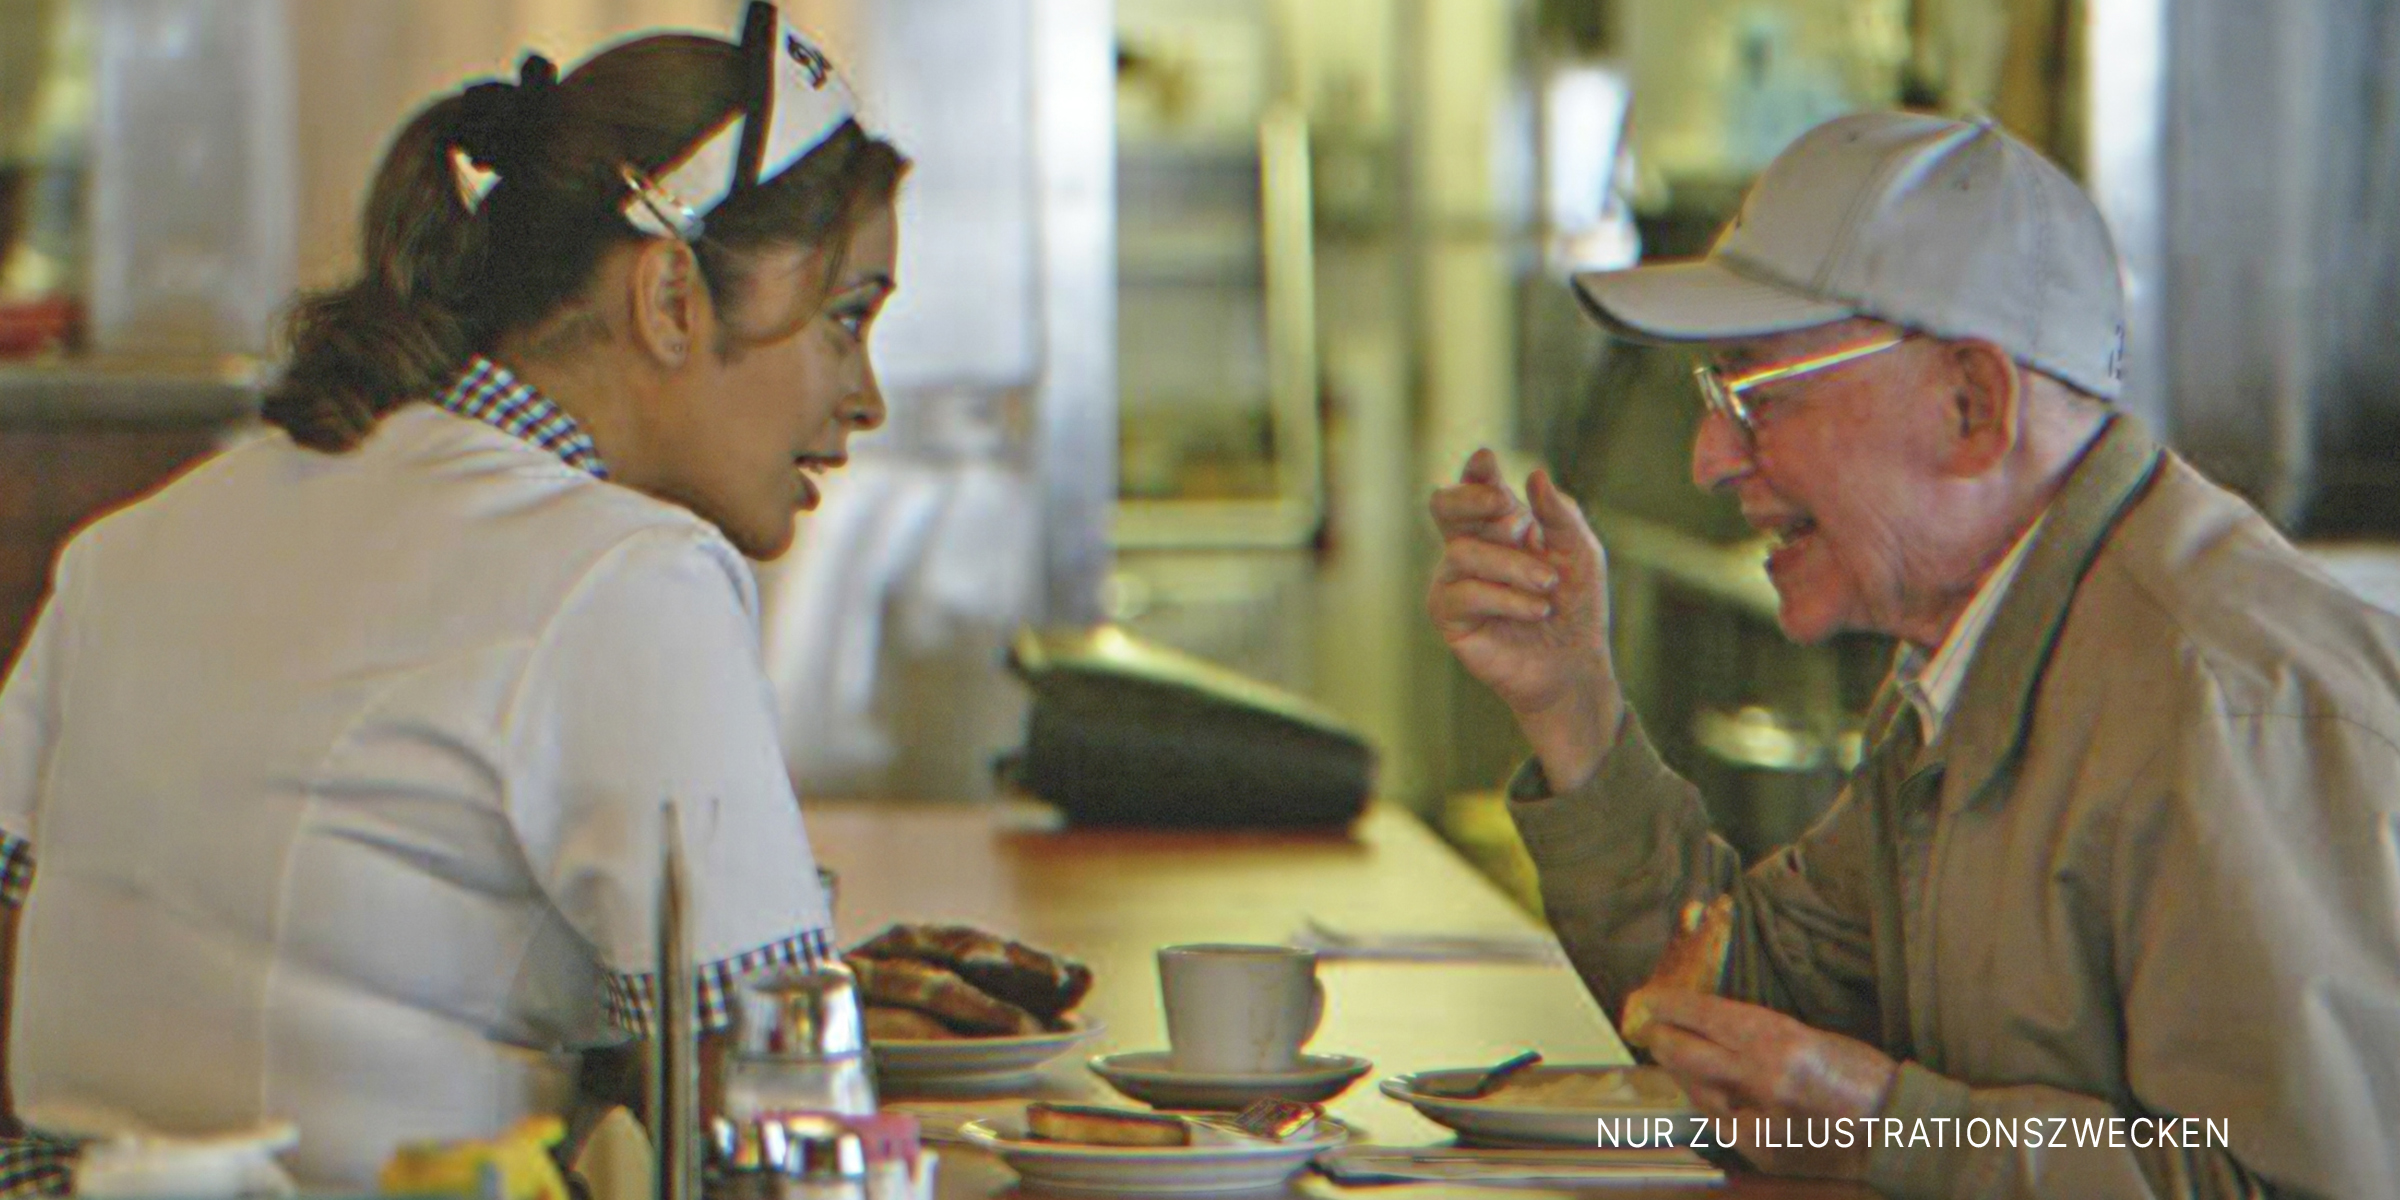 Kellnerin spricht mit altem Mann. | Quelle: Getty Images